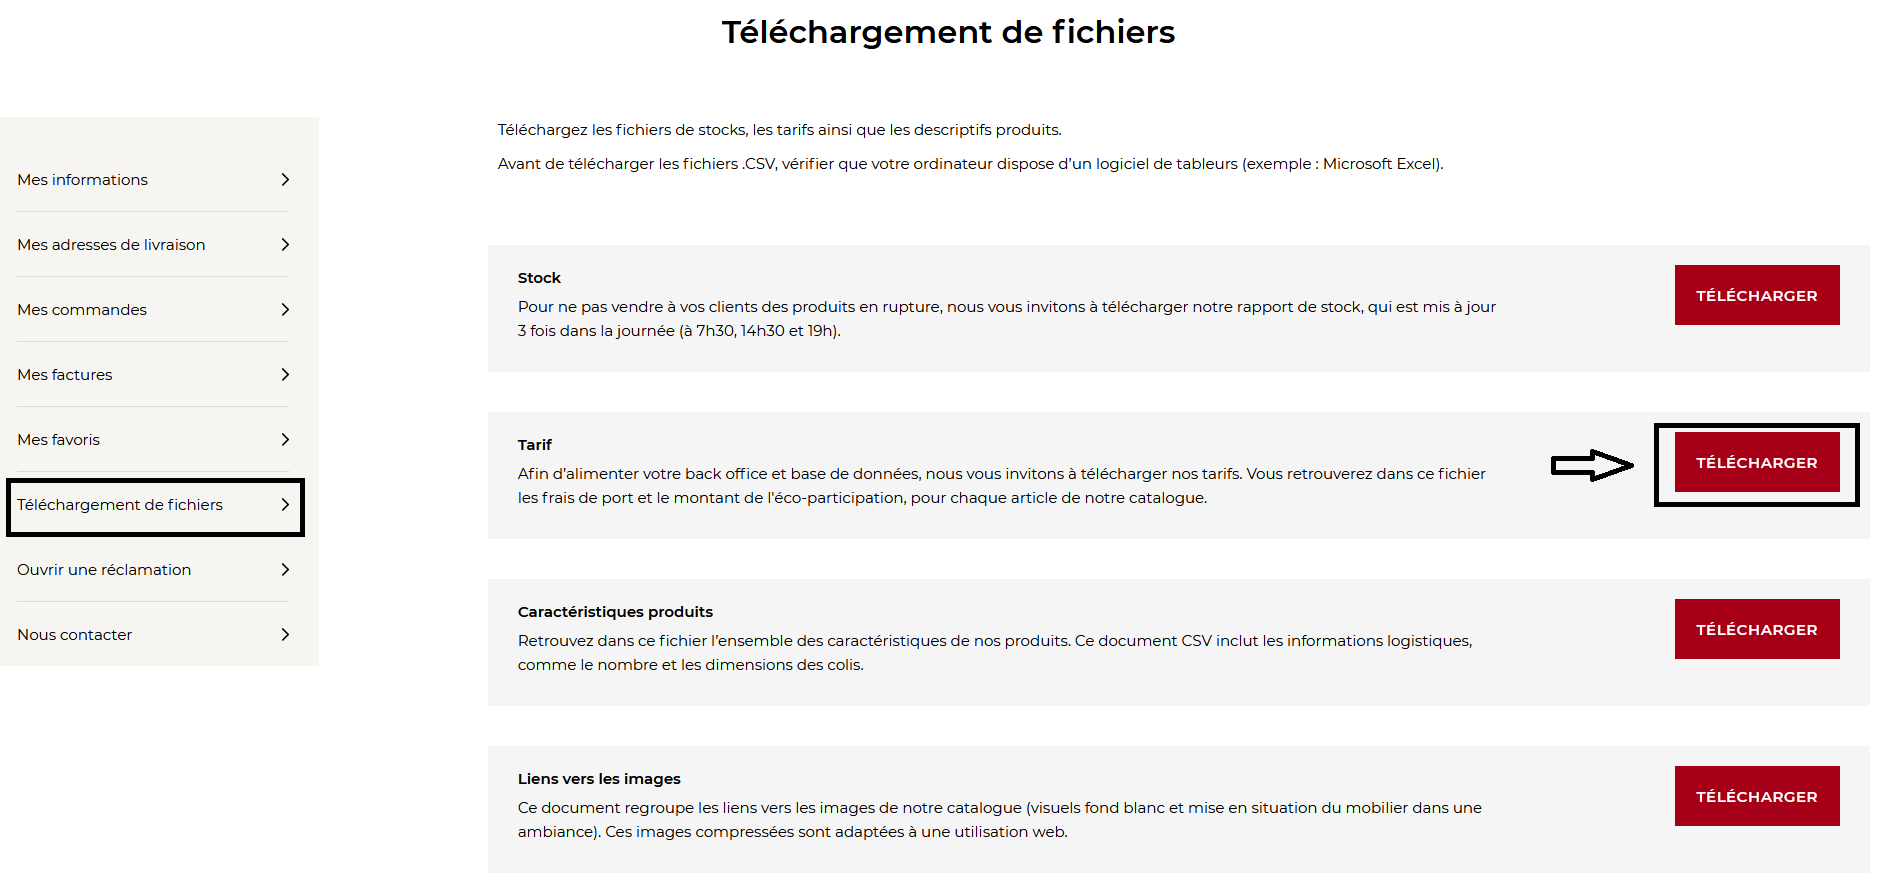 telechargement-tarif.PNG